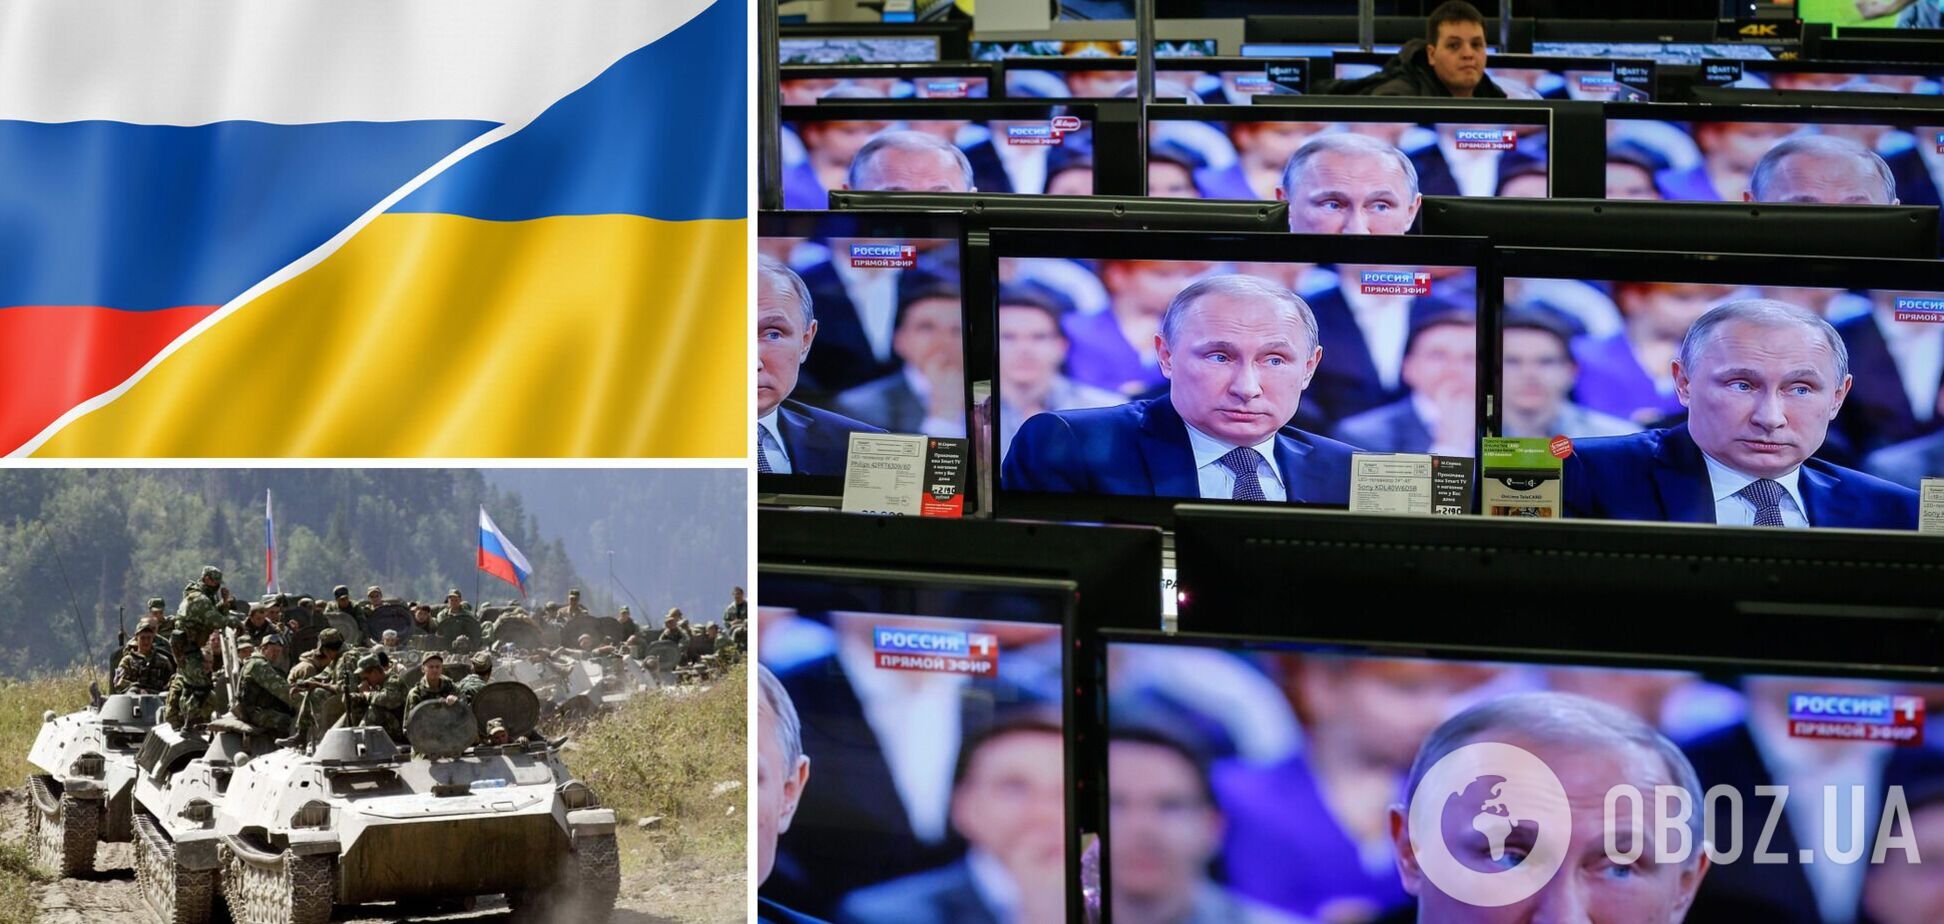 'Единственный выход' режима: как кремлевская пропаганда готовит россиян к новой войне с Украиной